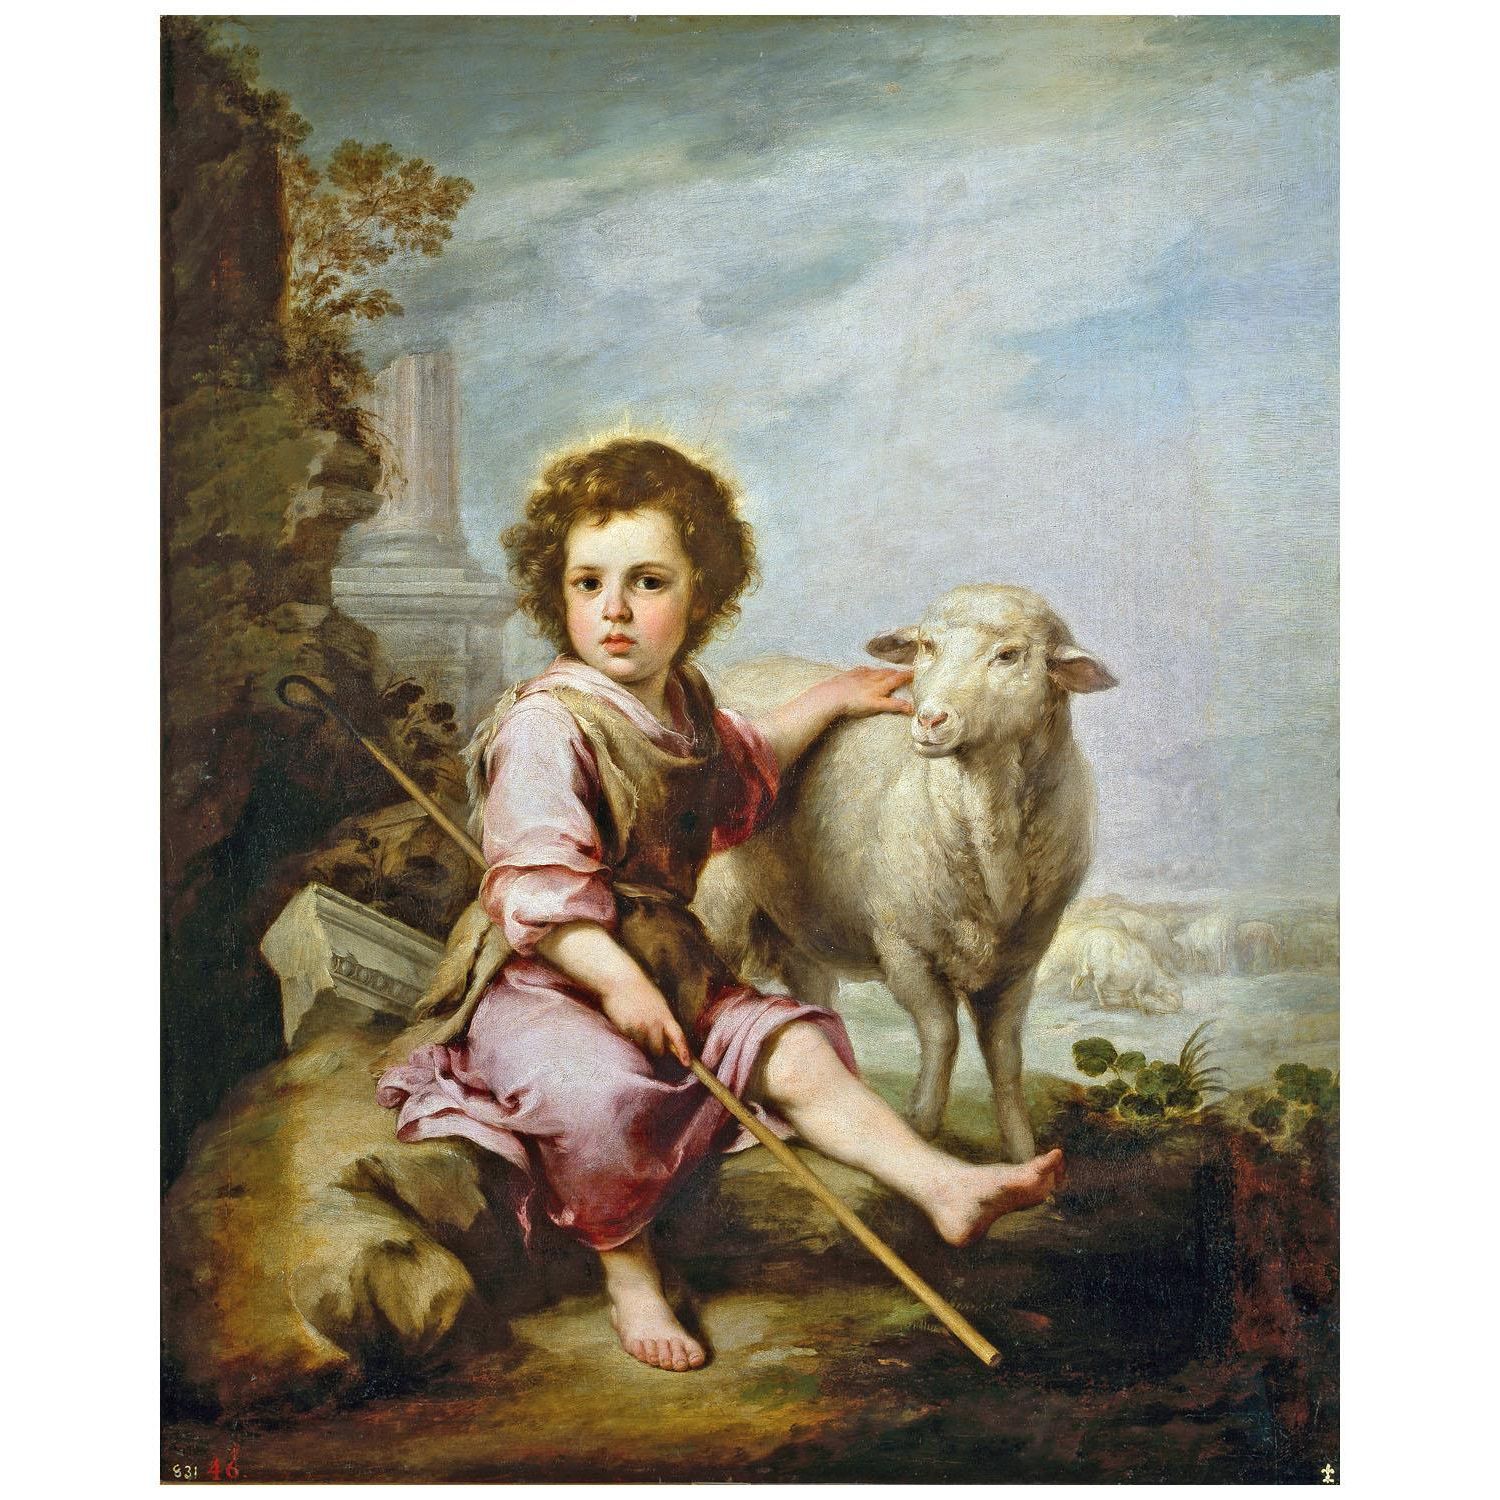 Bartolome Esteban Murillo. El Buen Pastor. 1660. Museo del Prado